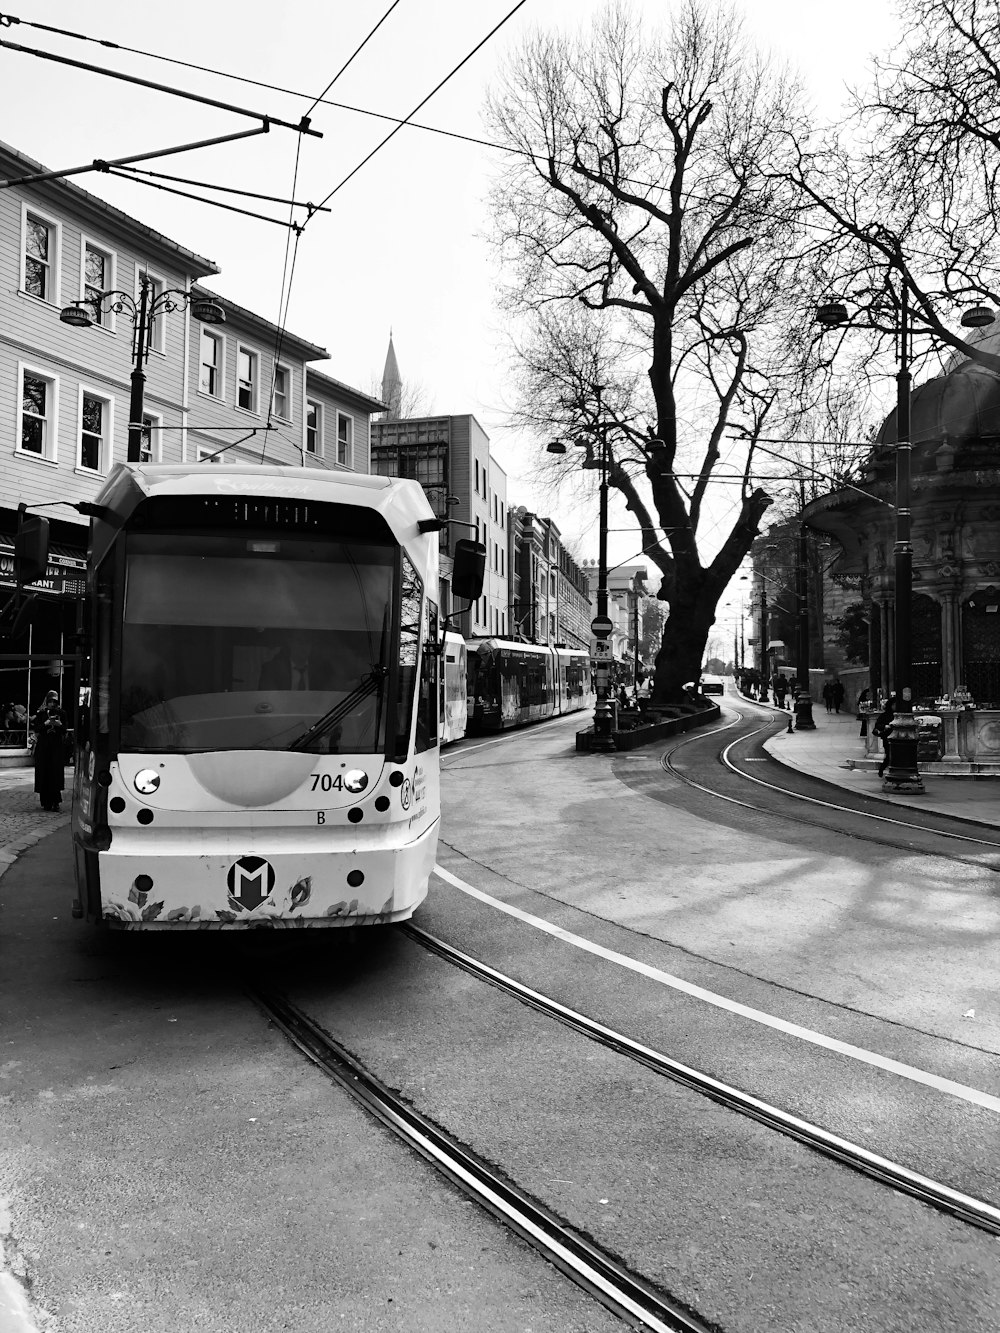 foto in scala di grigi del tram su strada